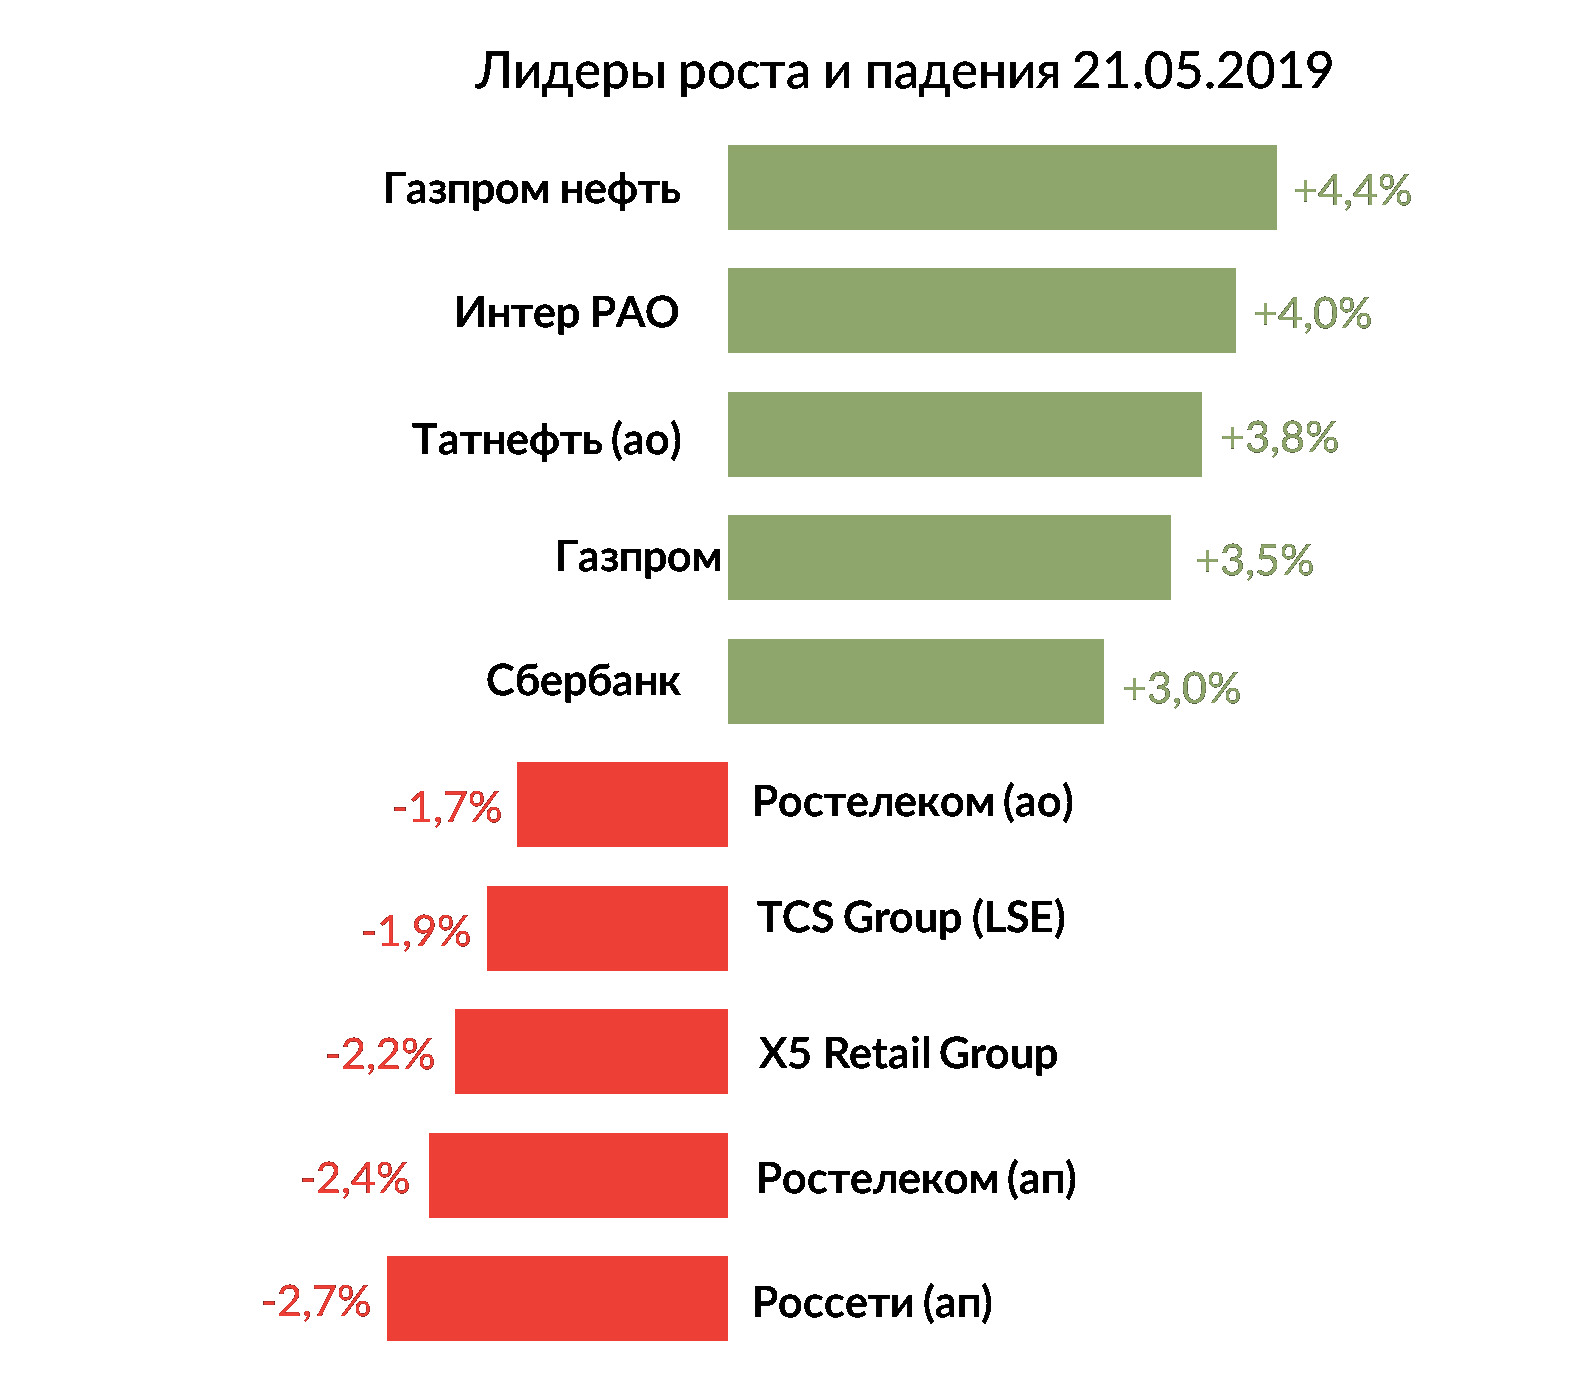 Лидеры роста и падения российского рынка на 21 мая